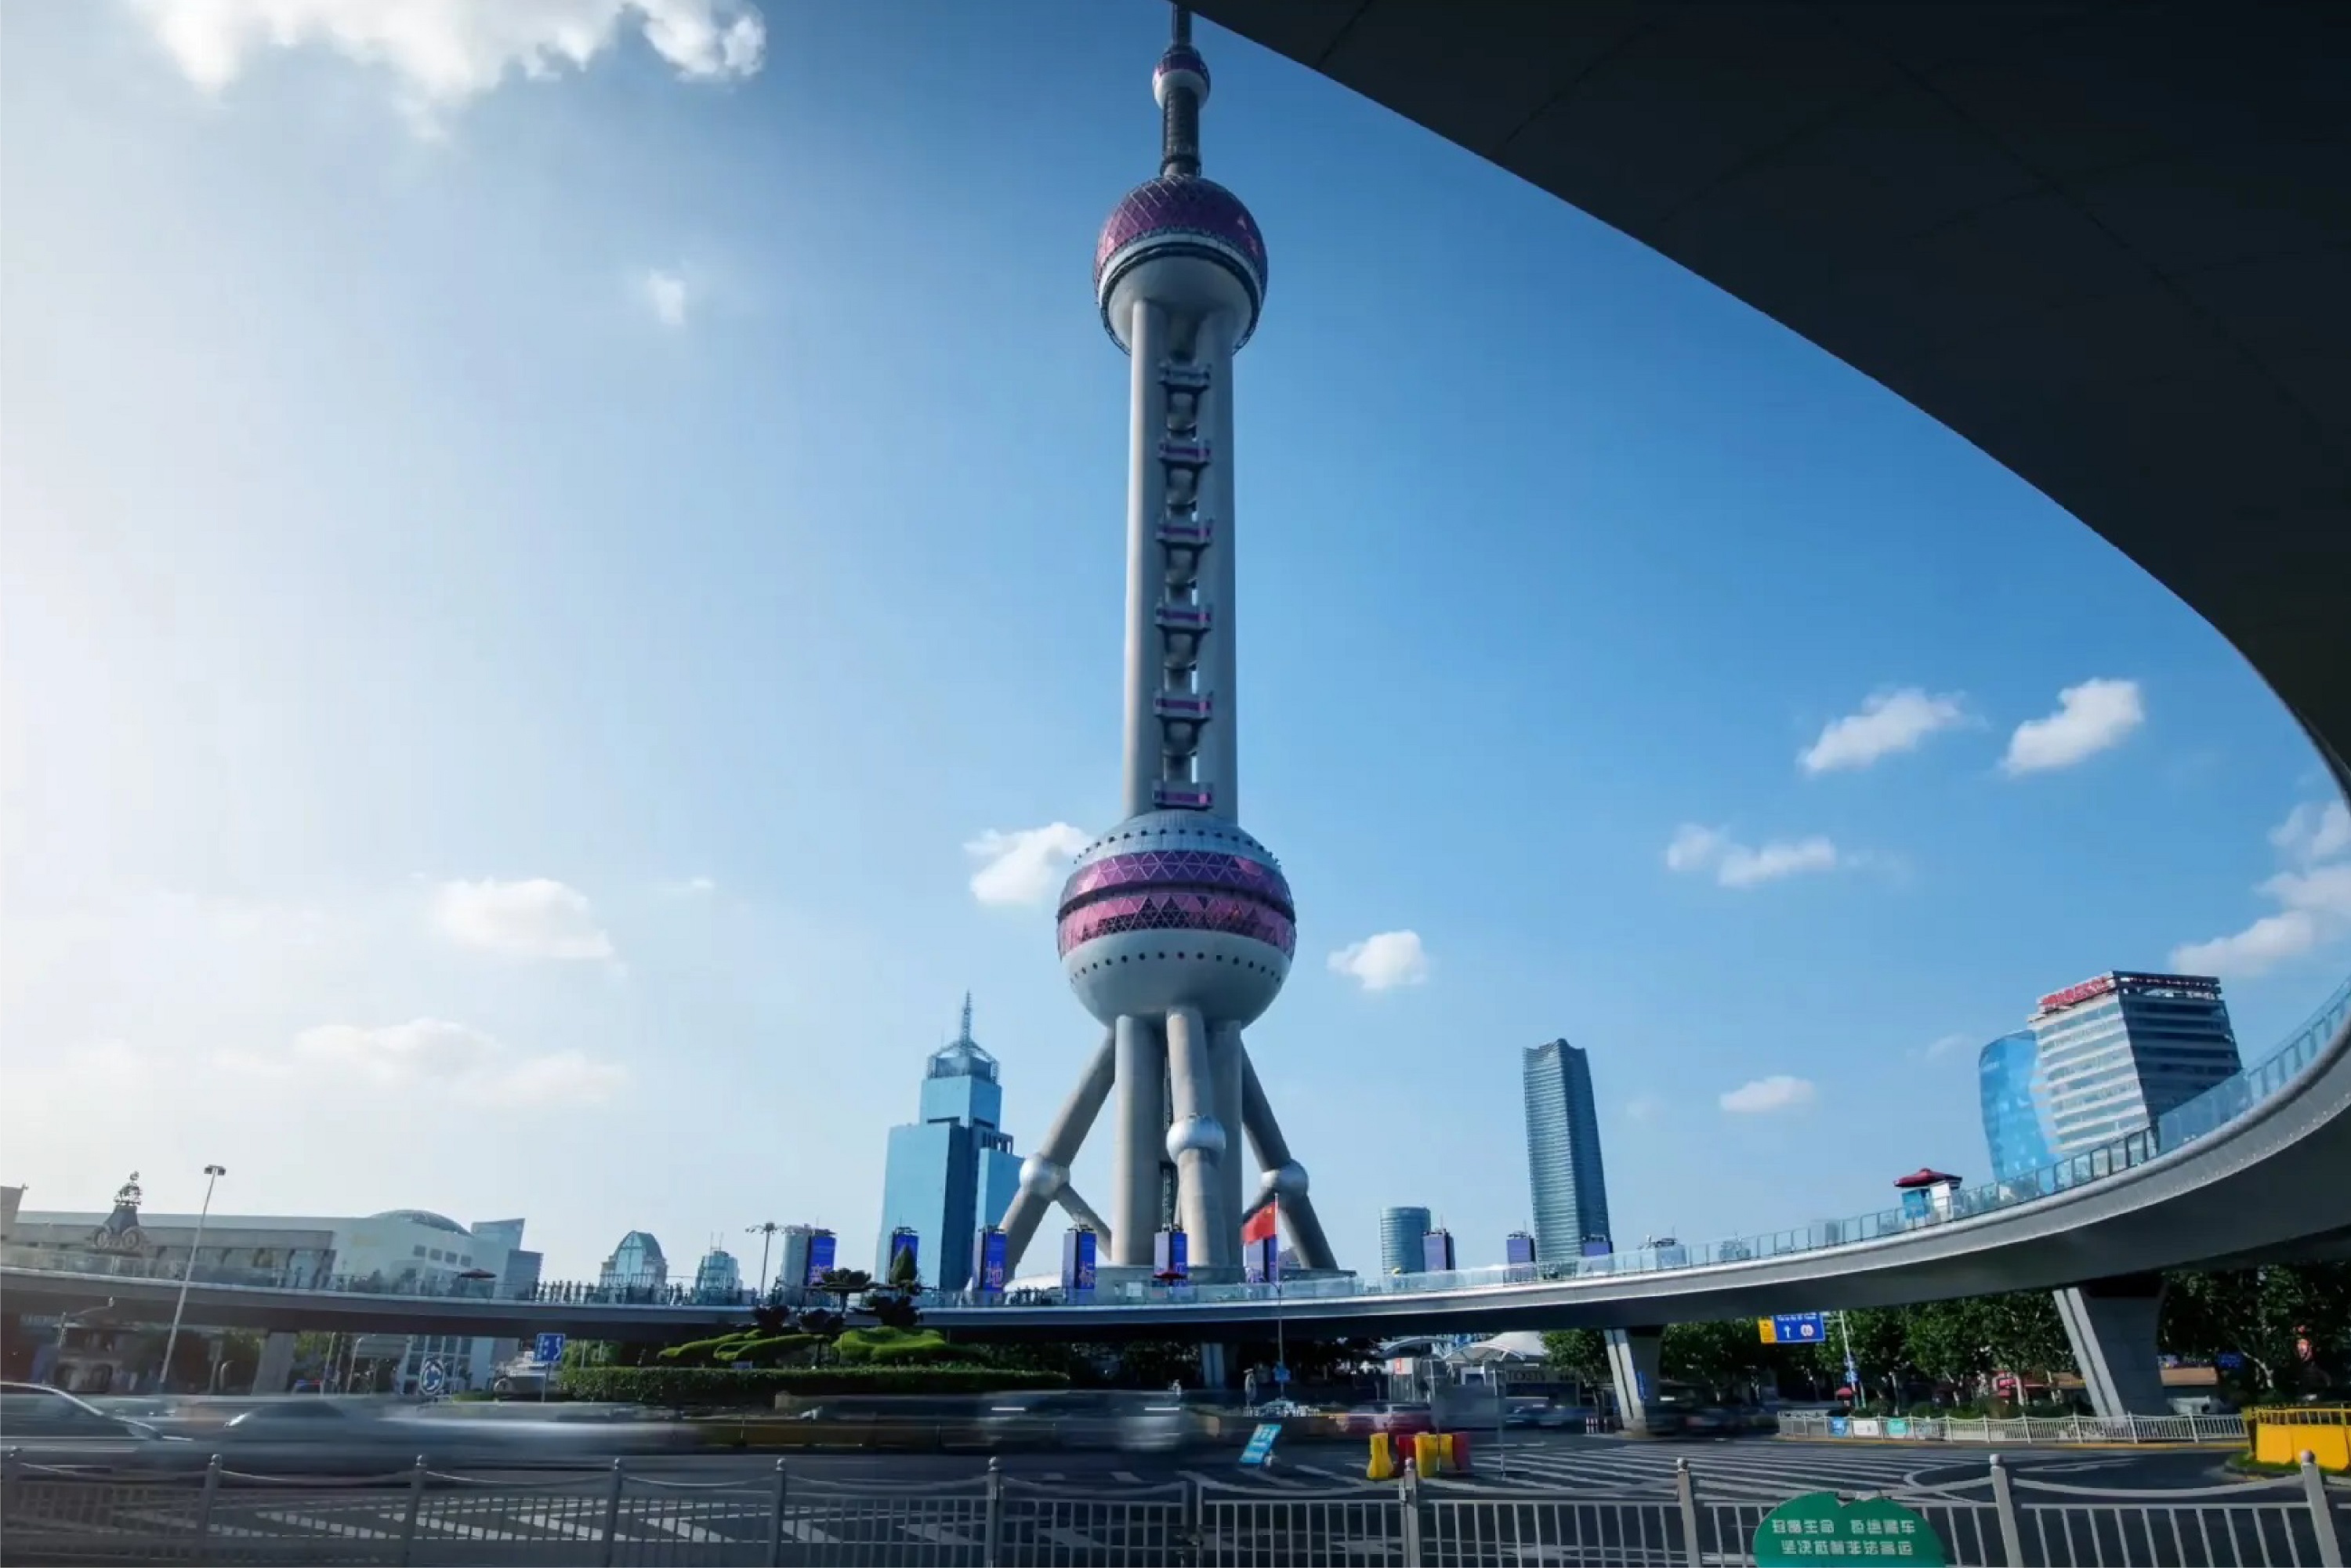 Oriental Pearl TV Tower Tower in Shanghai